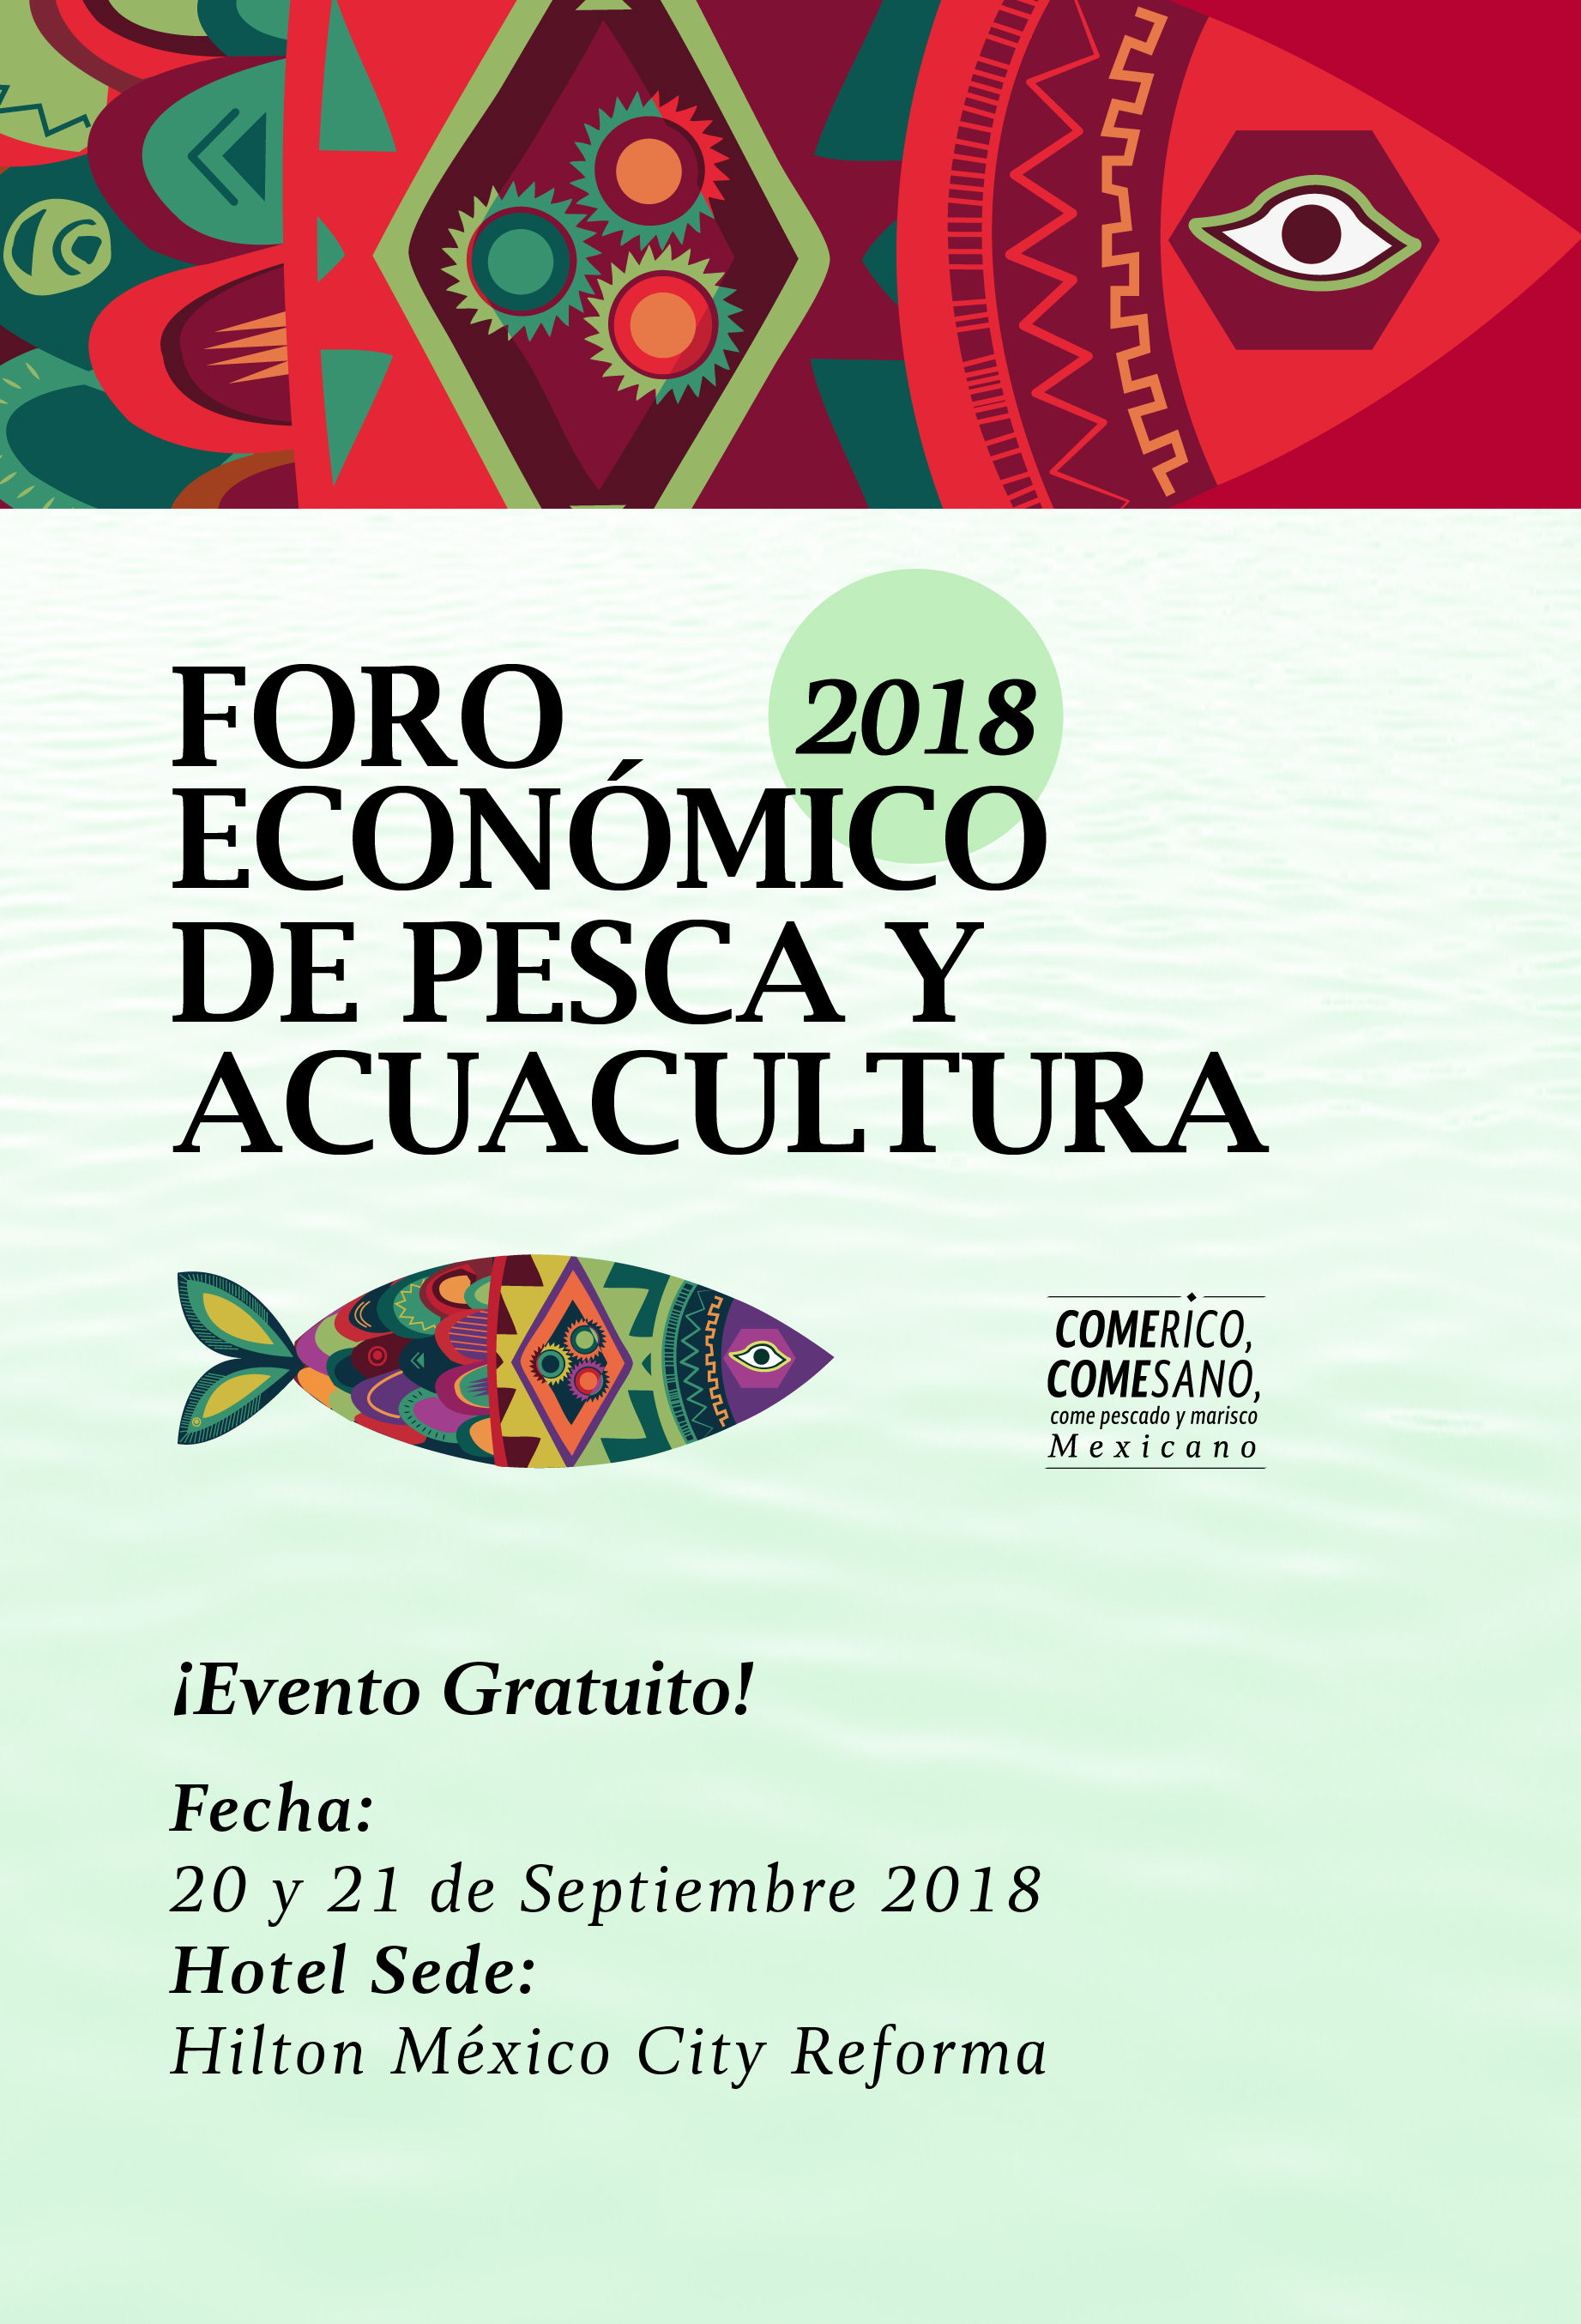 Foro Económico de Pesca y Acuacultura 2018